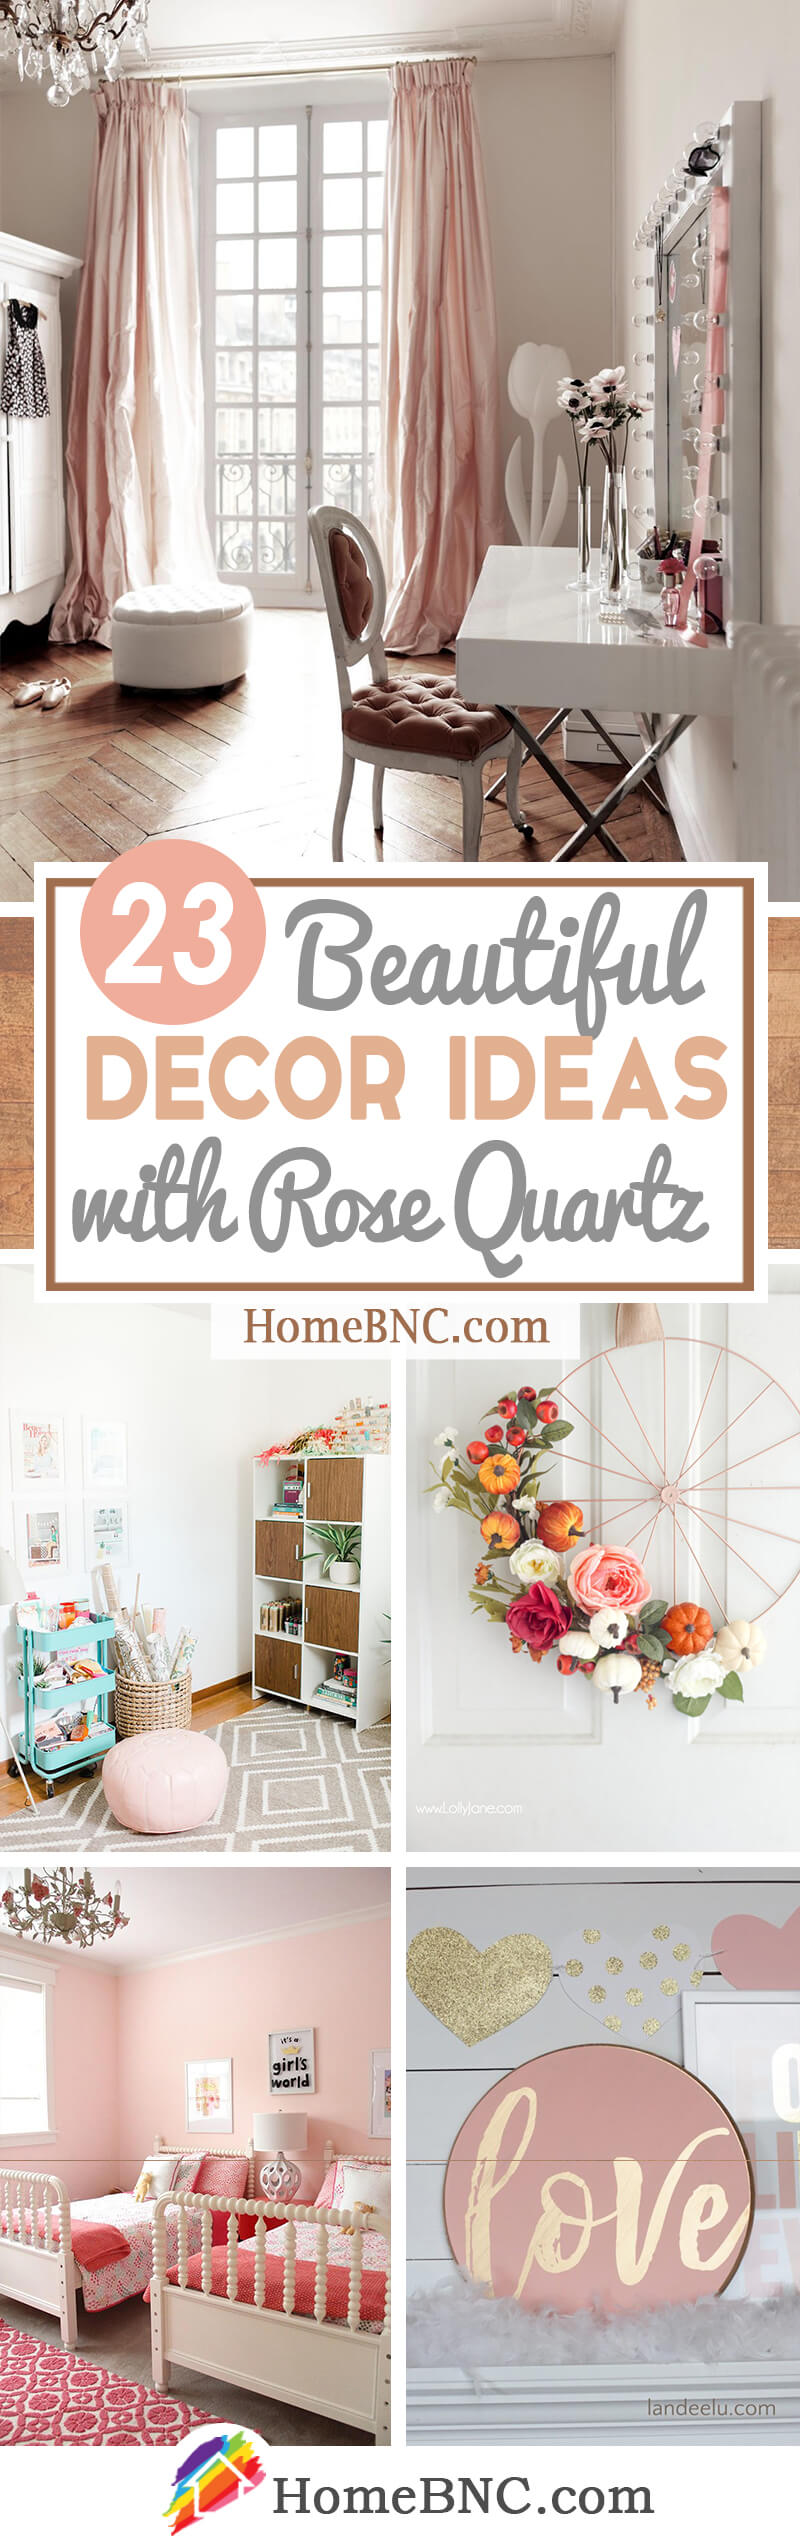 Rose Quartz Decorating Ideas